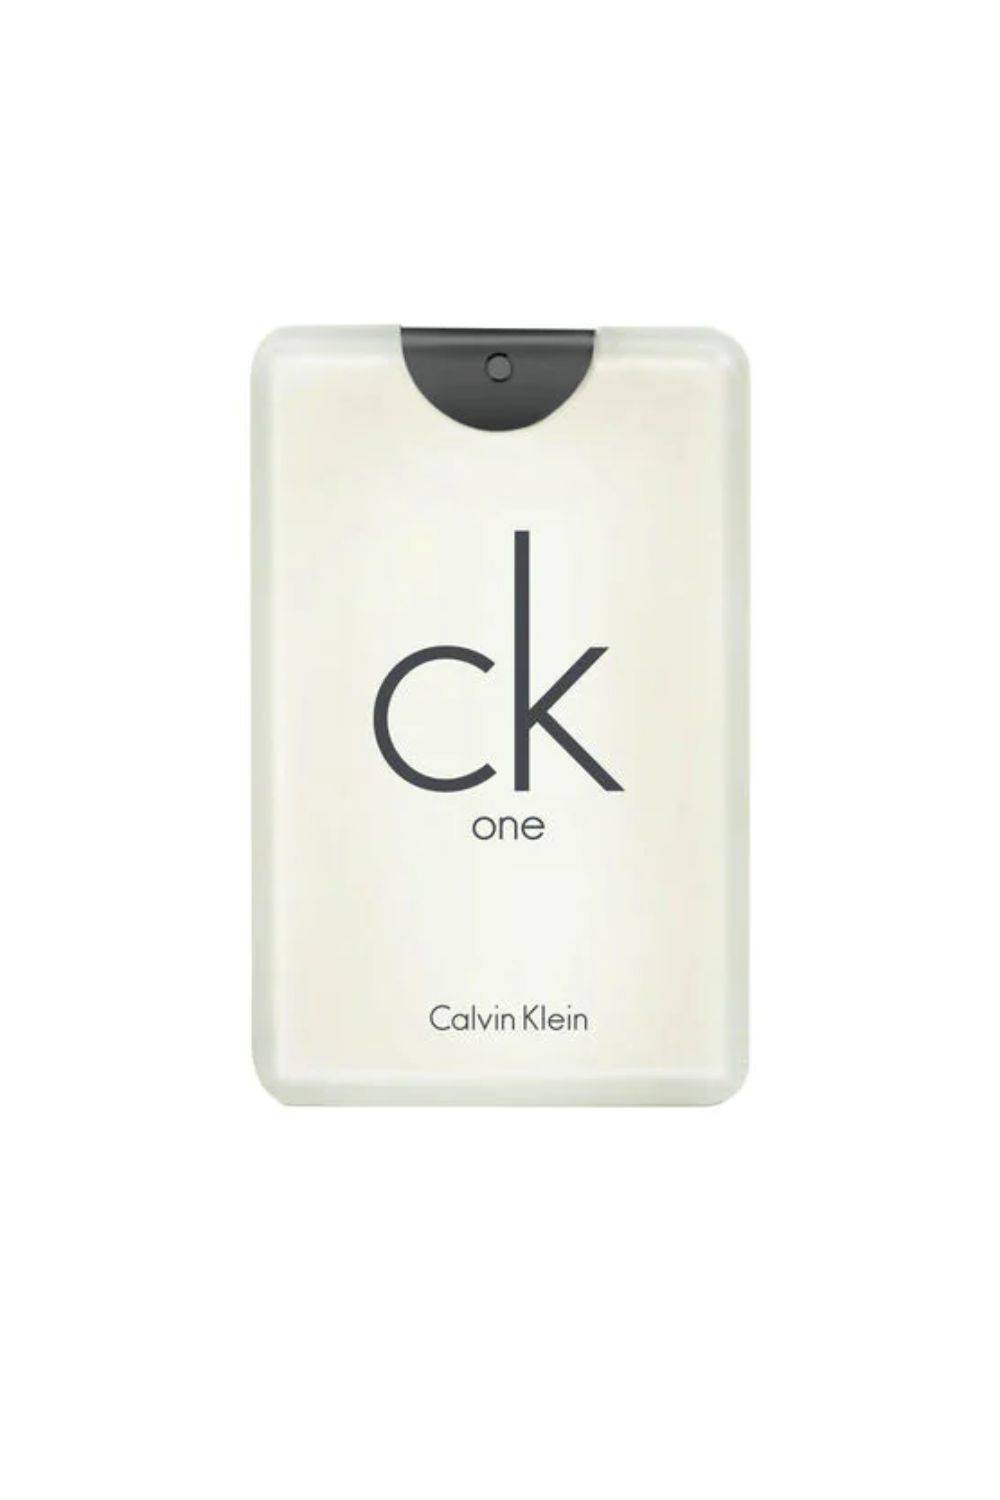 CK One de CALVIN KLEIN